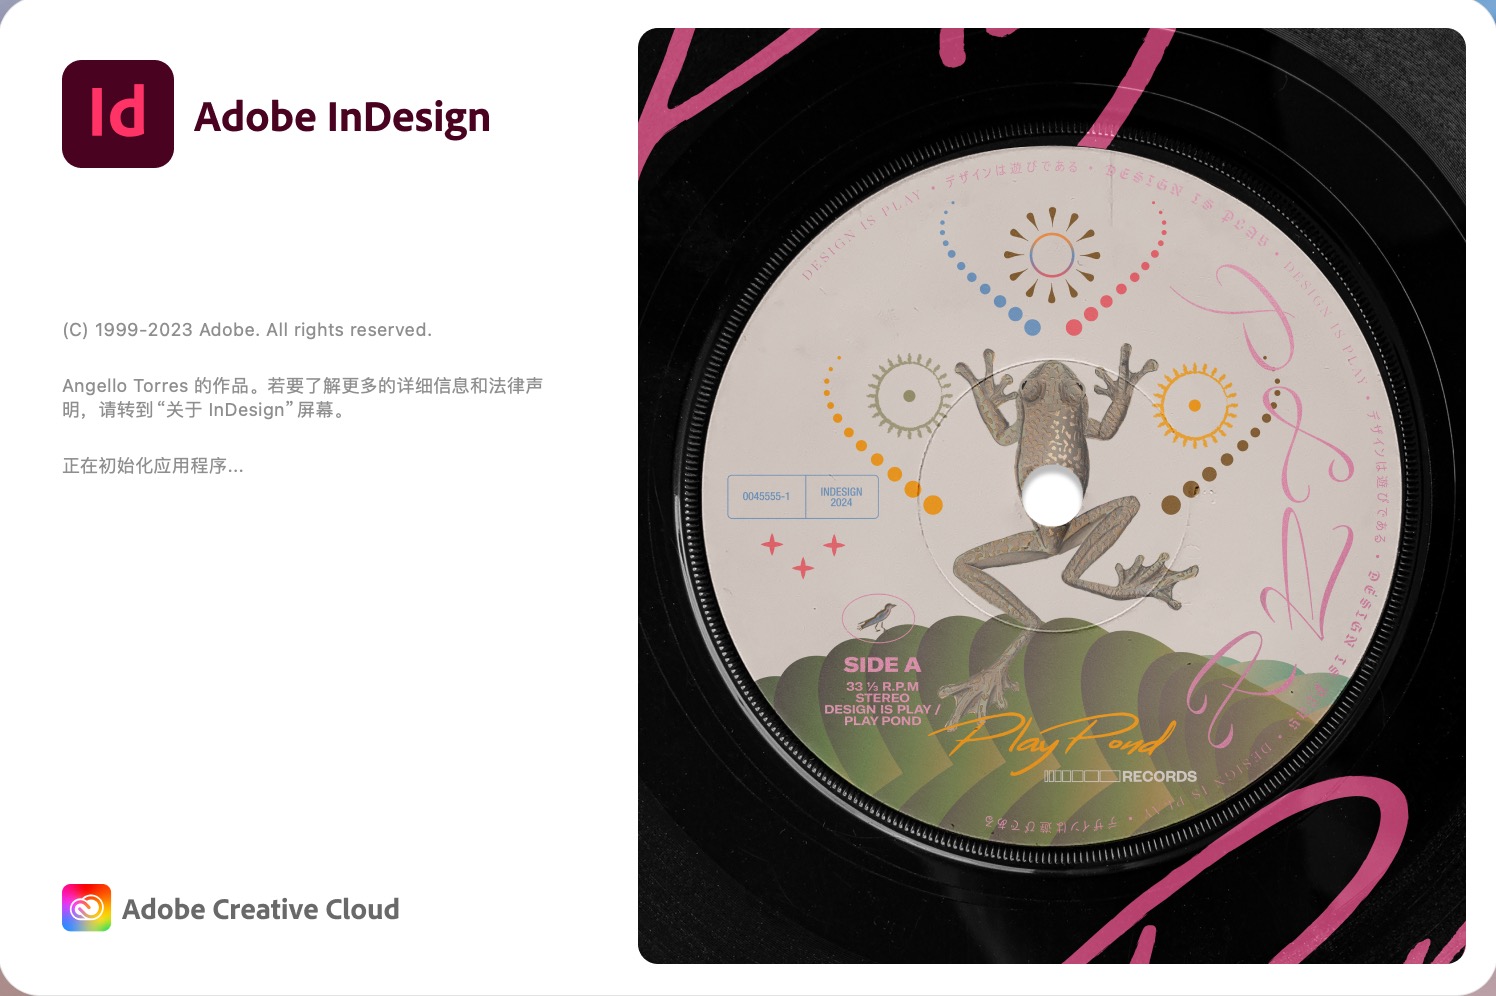 Adobe InDesign 2024 for mac(排版设计软件) 19.1.0.43中文激活版下载